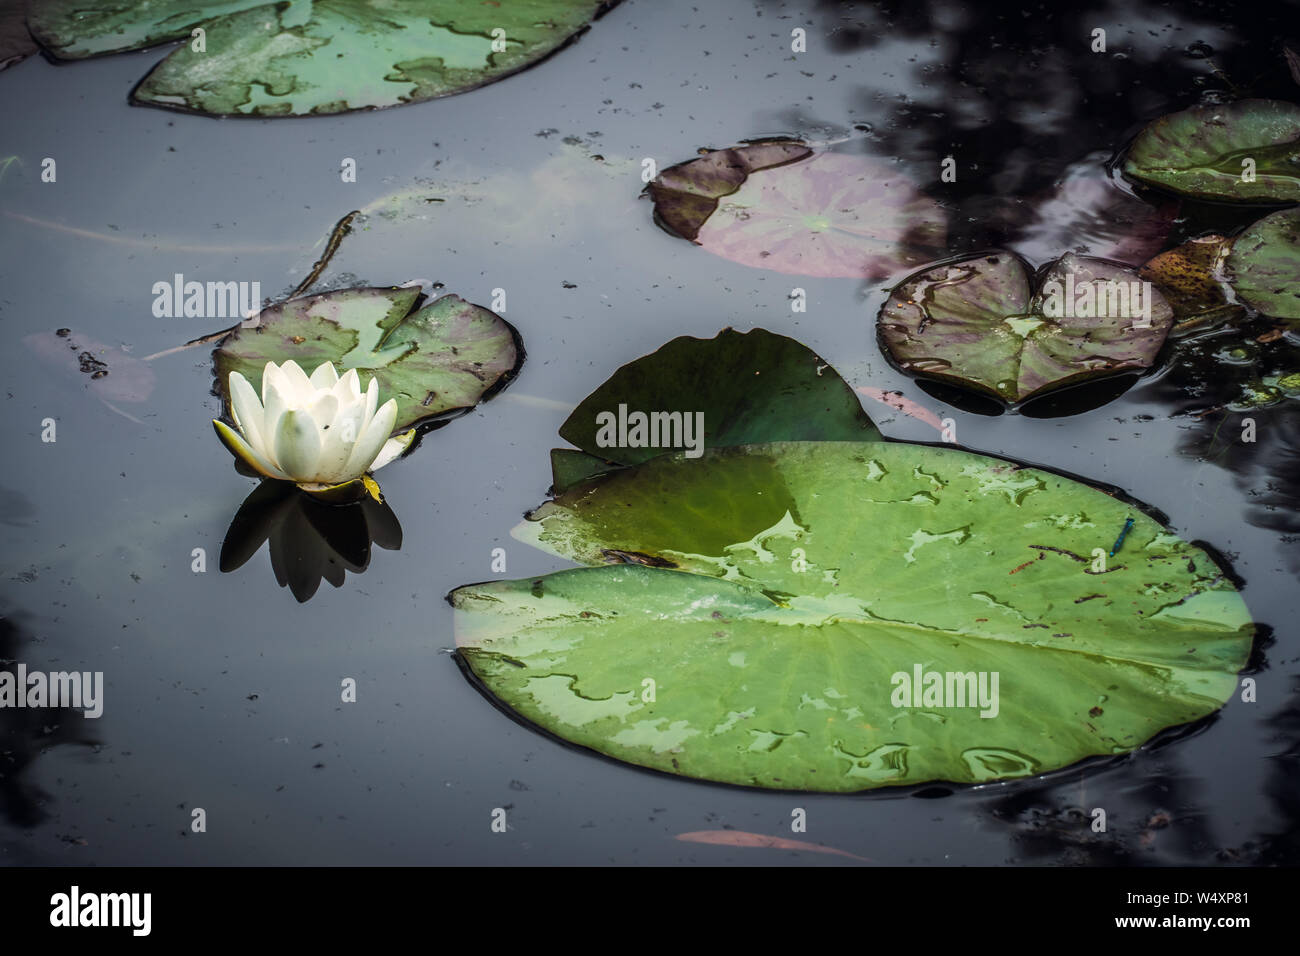 L'eau blanche fleur nénuphar ou nenuphar ou avec les feuilles de nénuphar. Nymphaea alba. Jardin de Claude Monet, Giverny, France. Banque D'Images